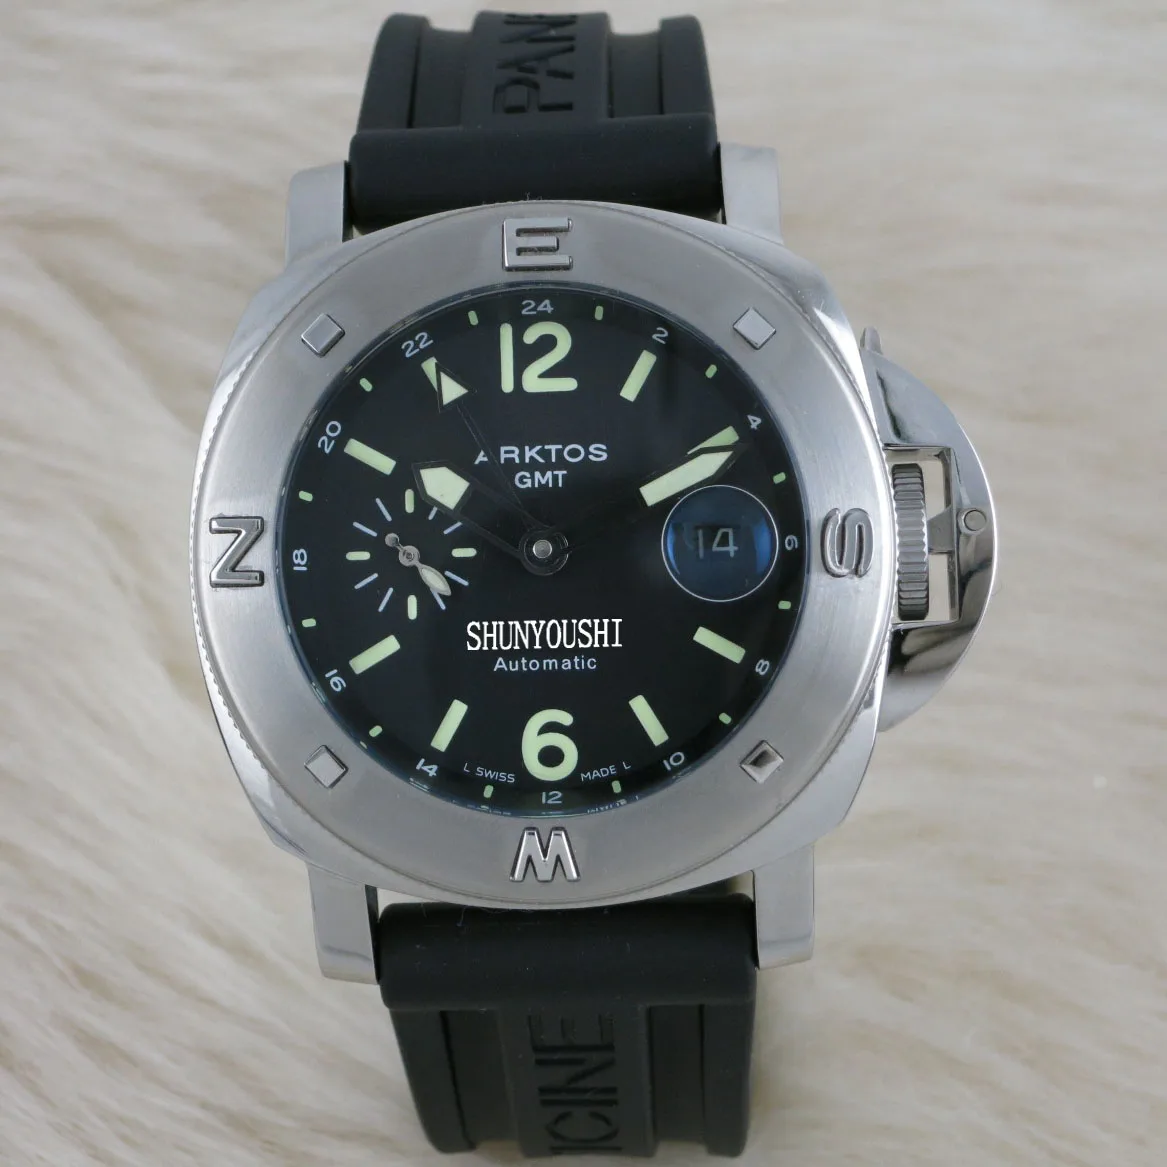 WG06532 мужские часы Топ бренд подиум роскошный европейский дизайн автоматические механические часы